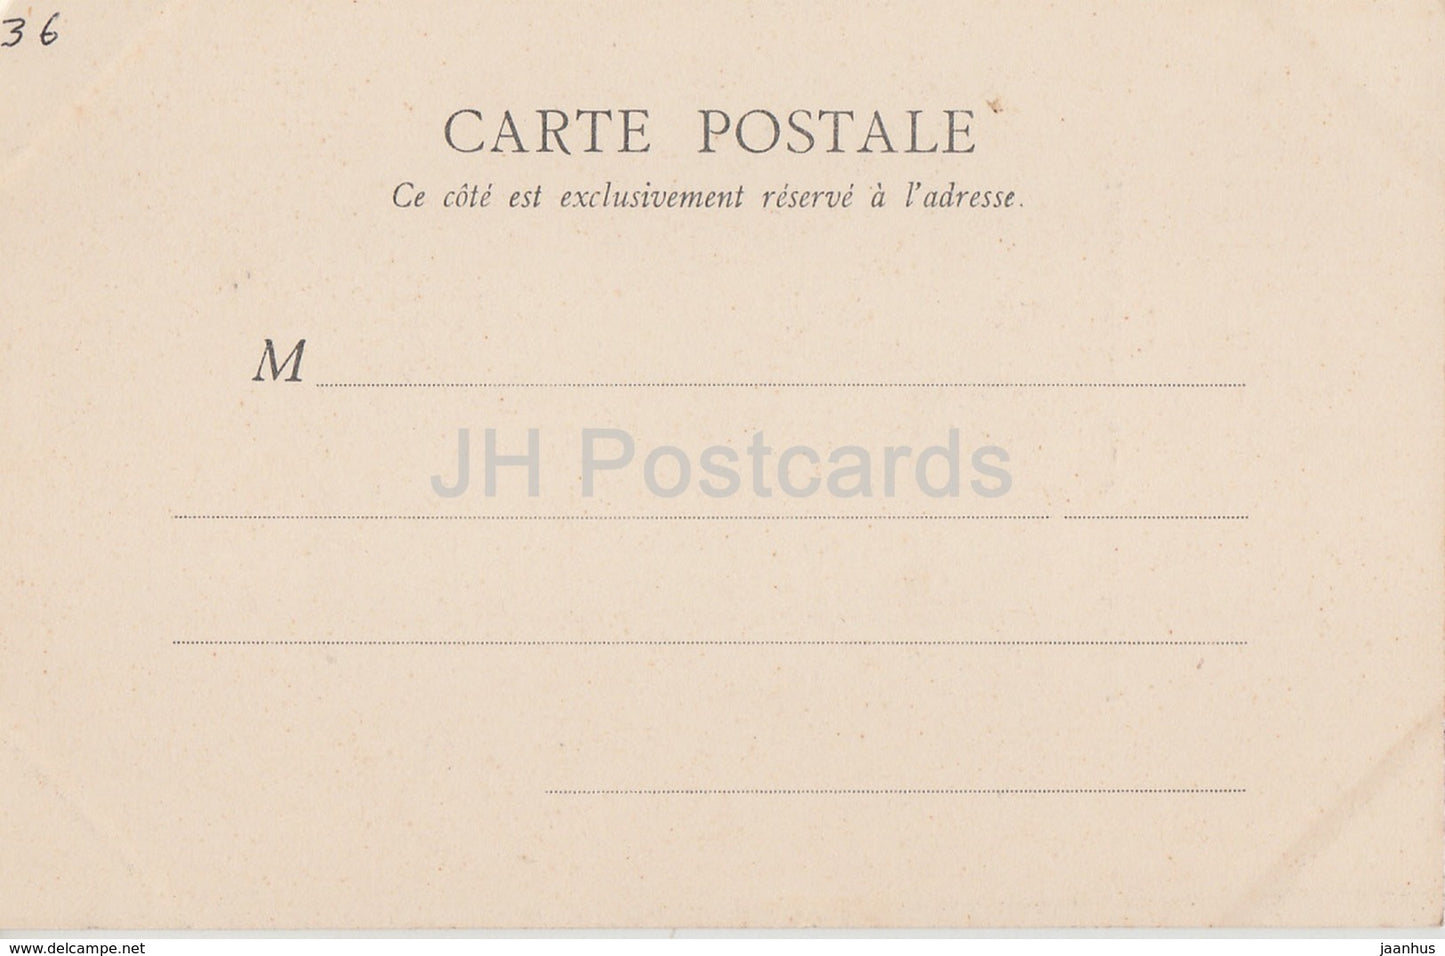 Environs d'Argenton - Chateau de Plessis - castle - old postcard - France - unused